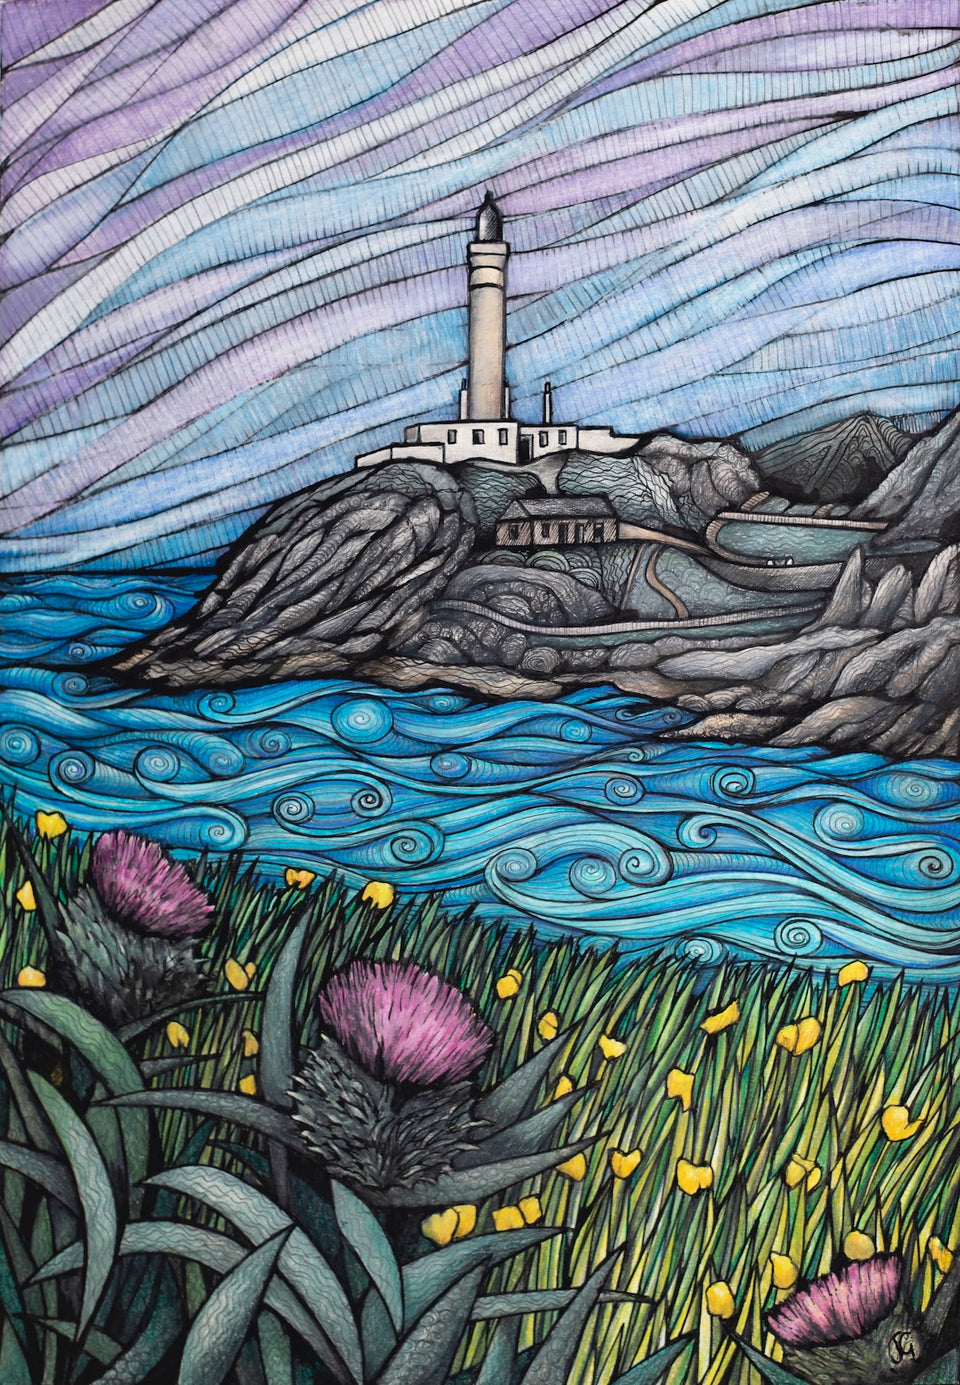 Summer Ardnamurchan Lighthouse - Fine Art Print